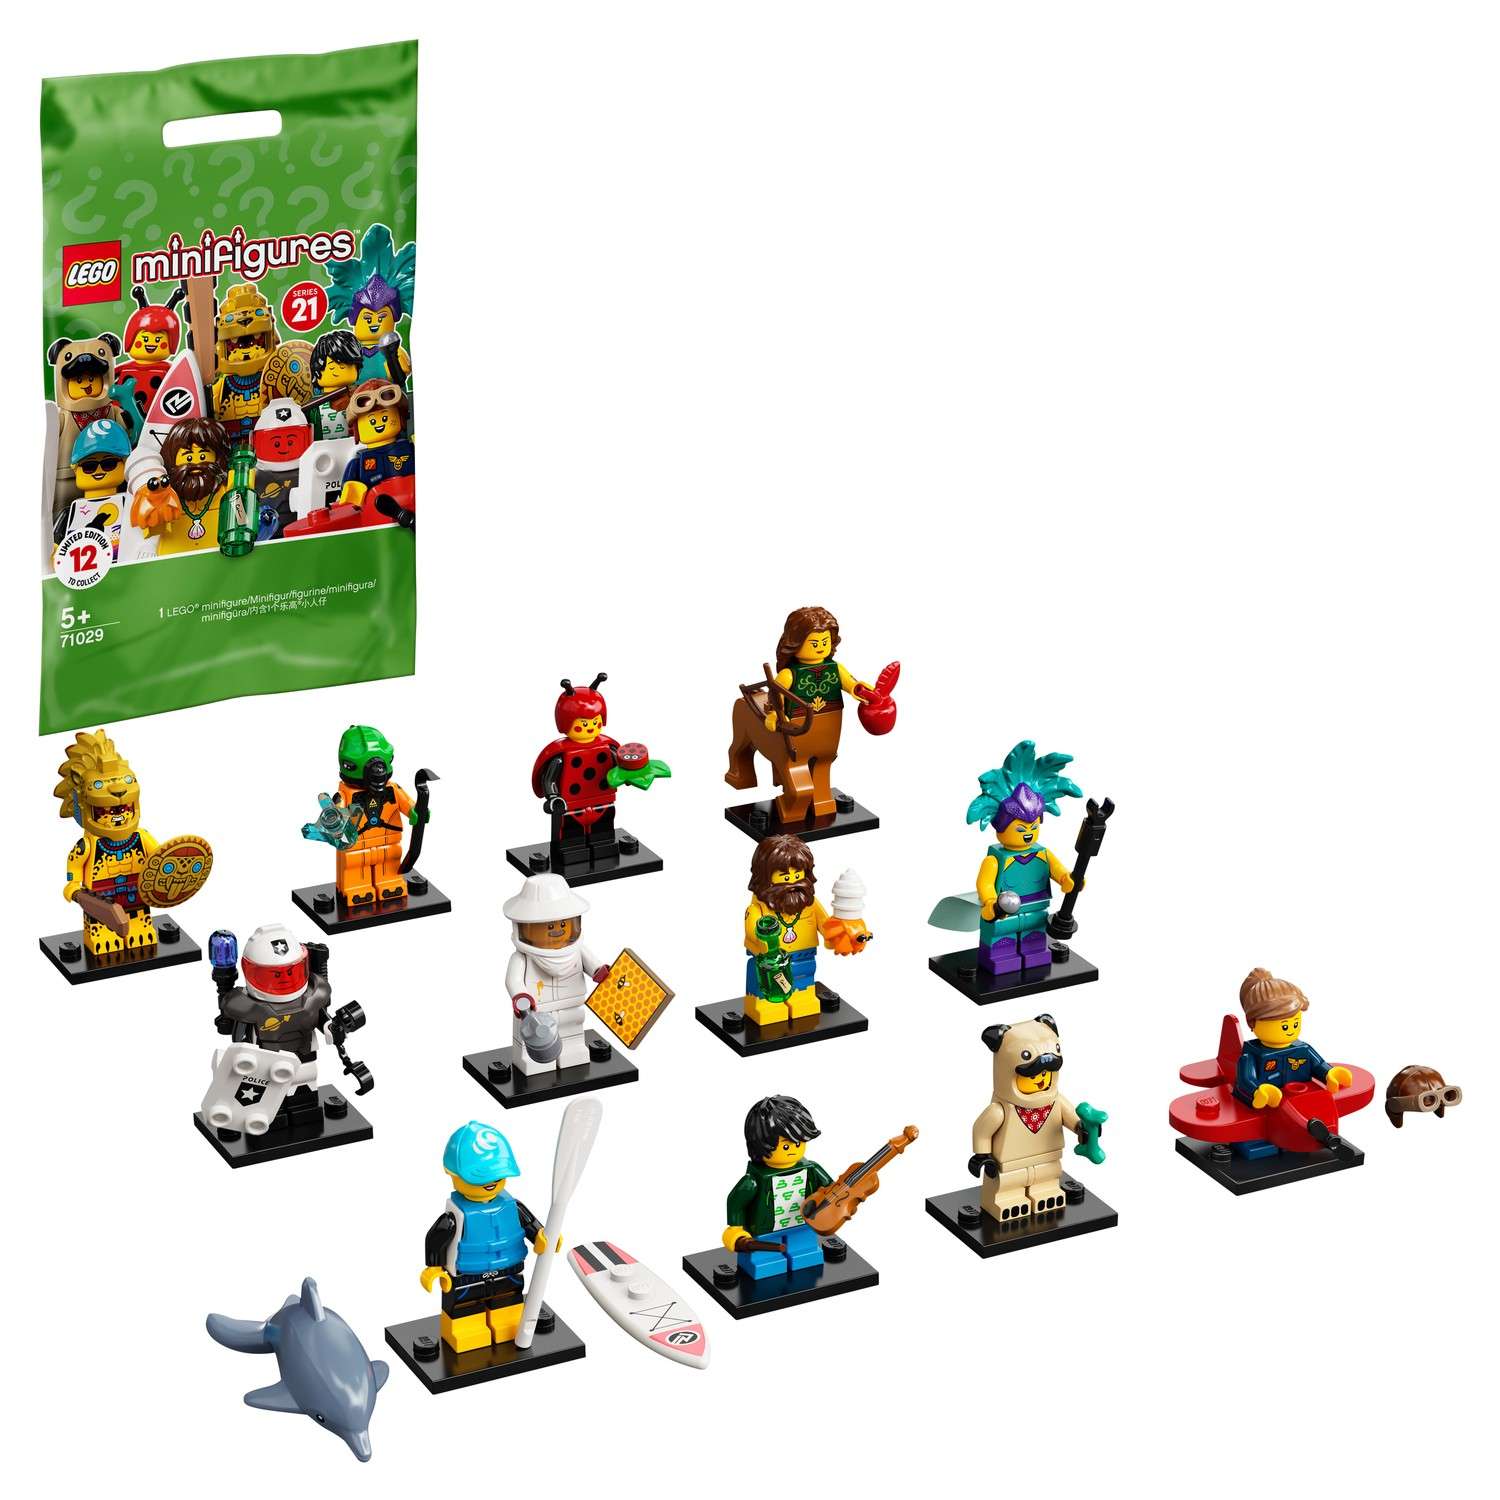 Конструктор LEGO Minifigures Минифигурки Серия 21 71029 - фото 1